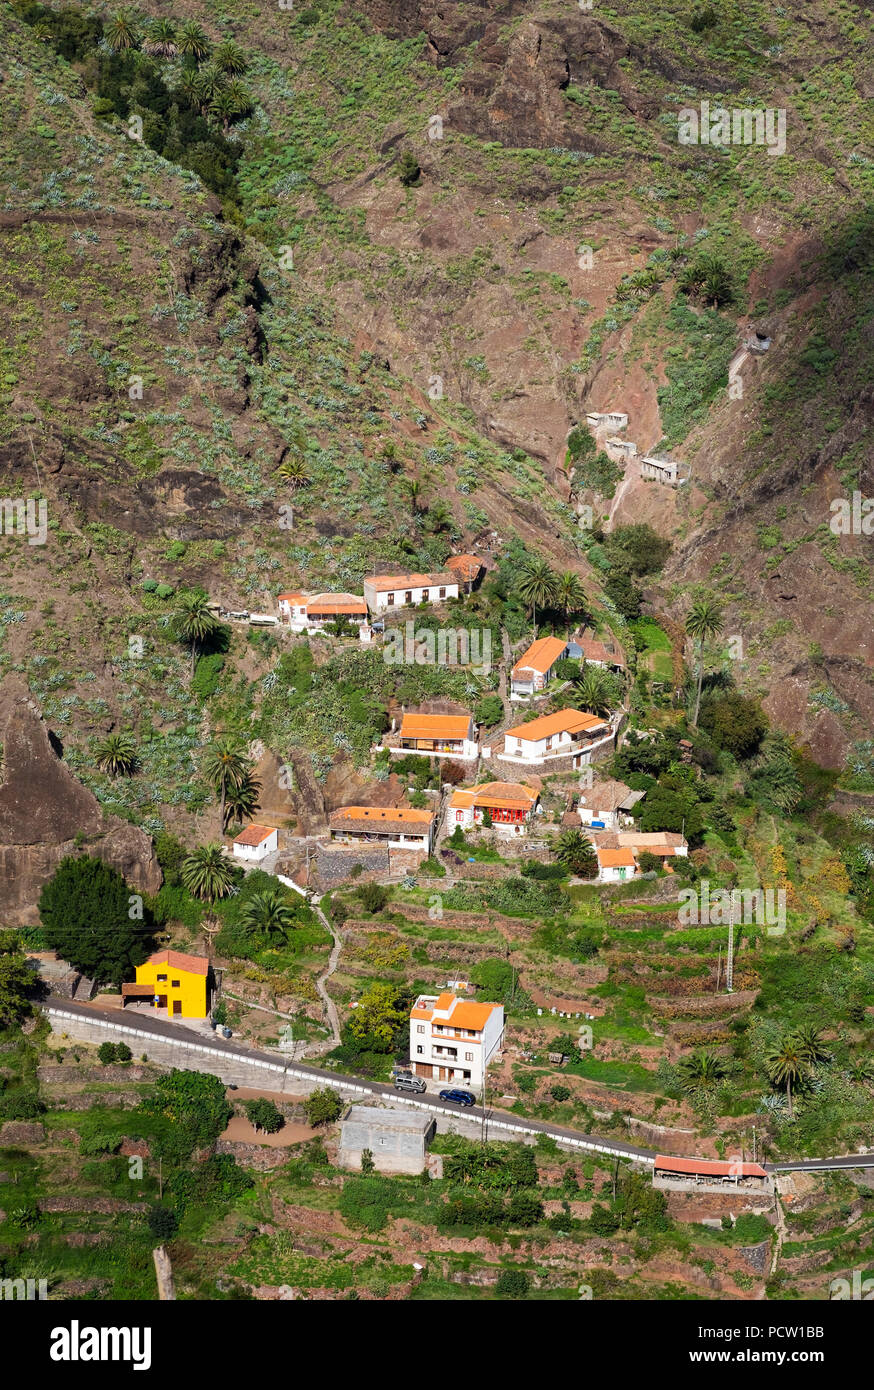 La Laja village, Barranco de las Lajas, San Sebastian, La Gomera, Canary Islands, Canaries, Spain Stock Photo